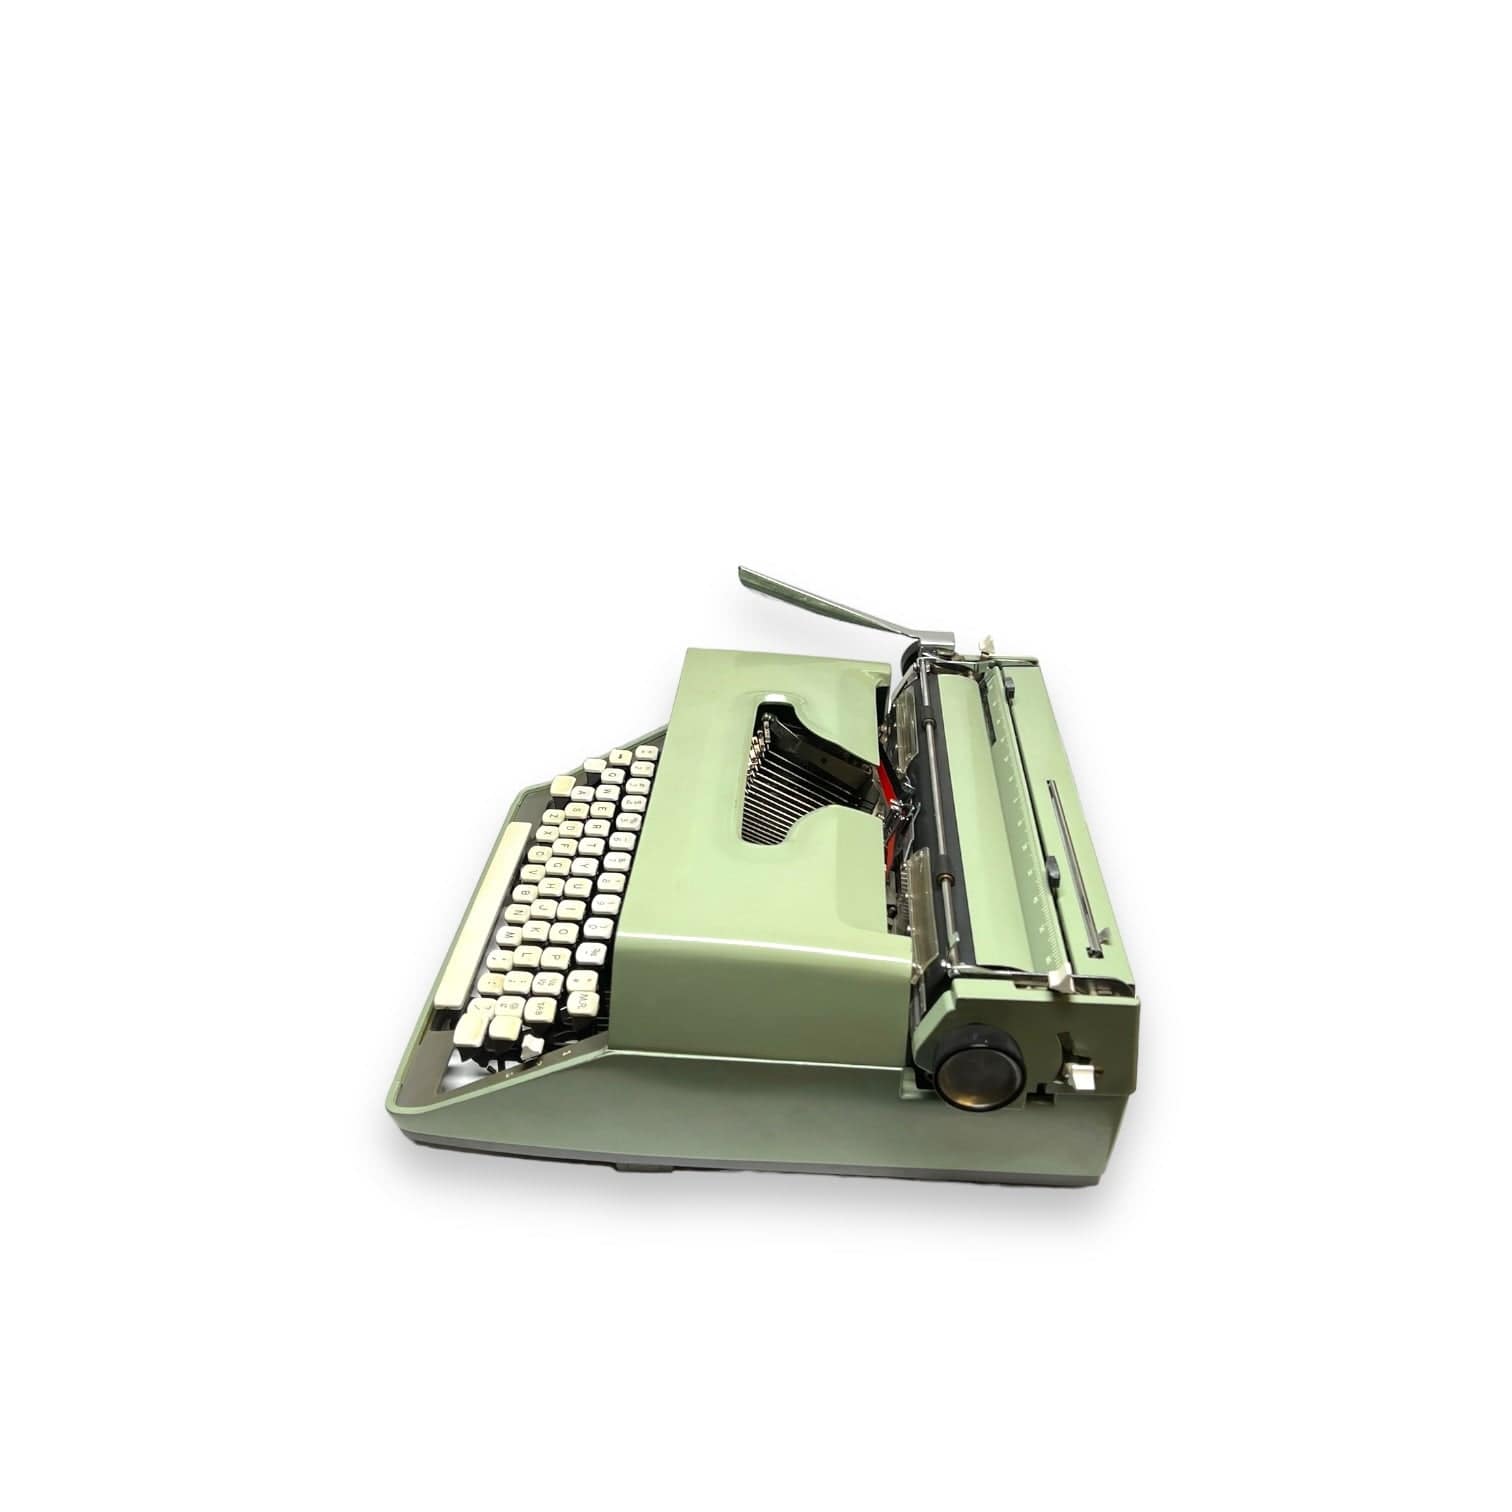 Toronto Typewriters Portable Typewriter Remington 11 Typewriter